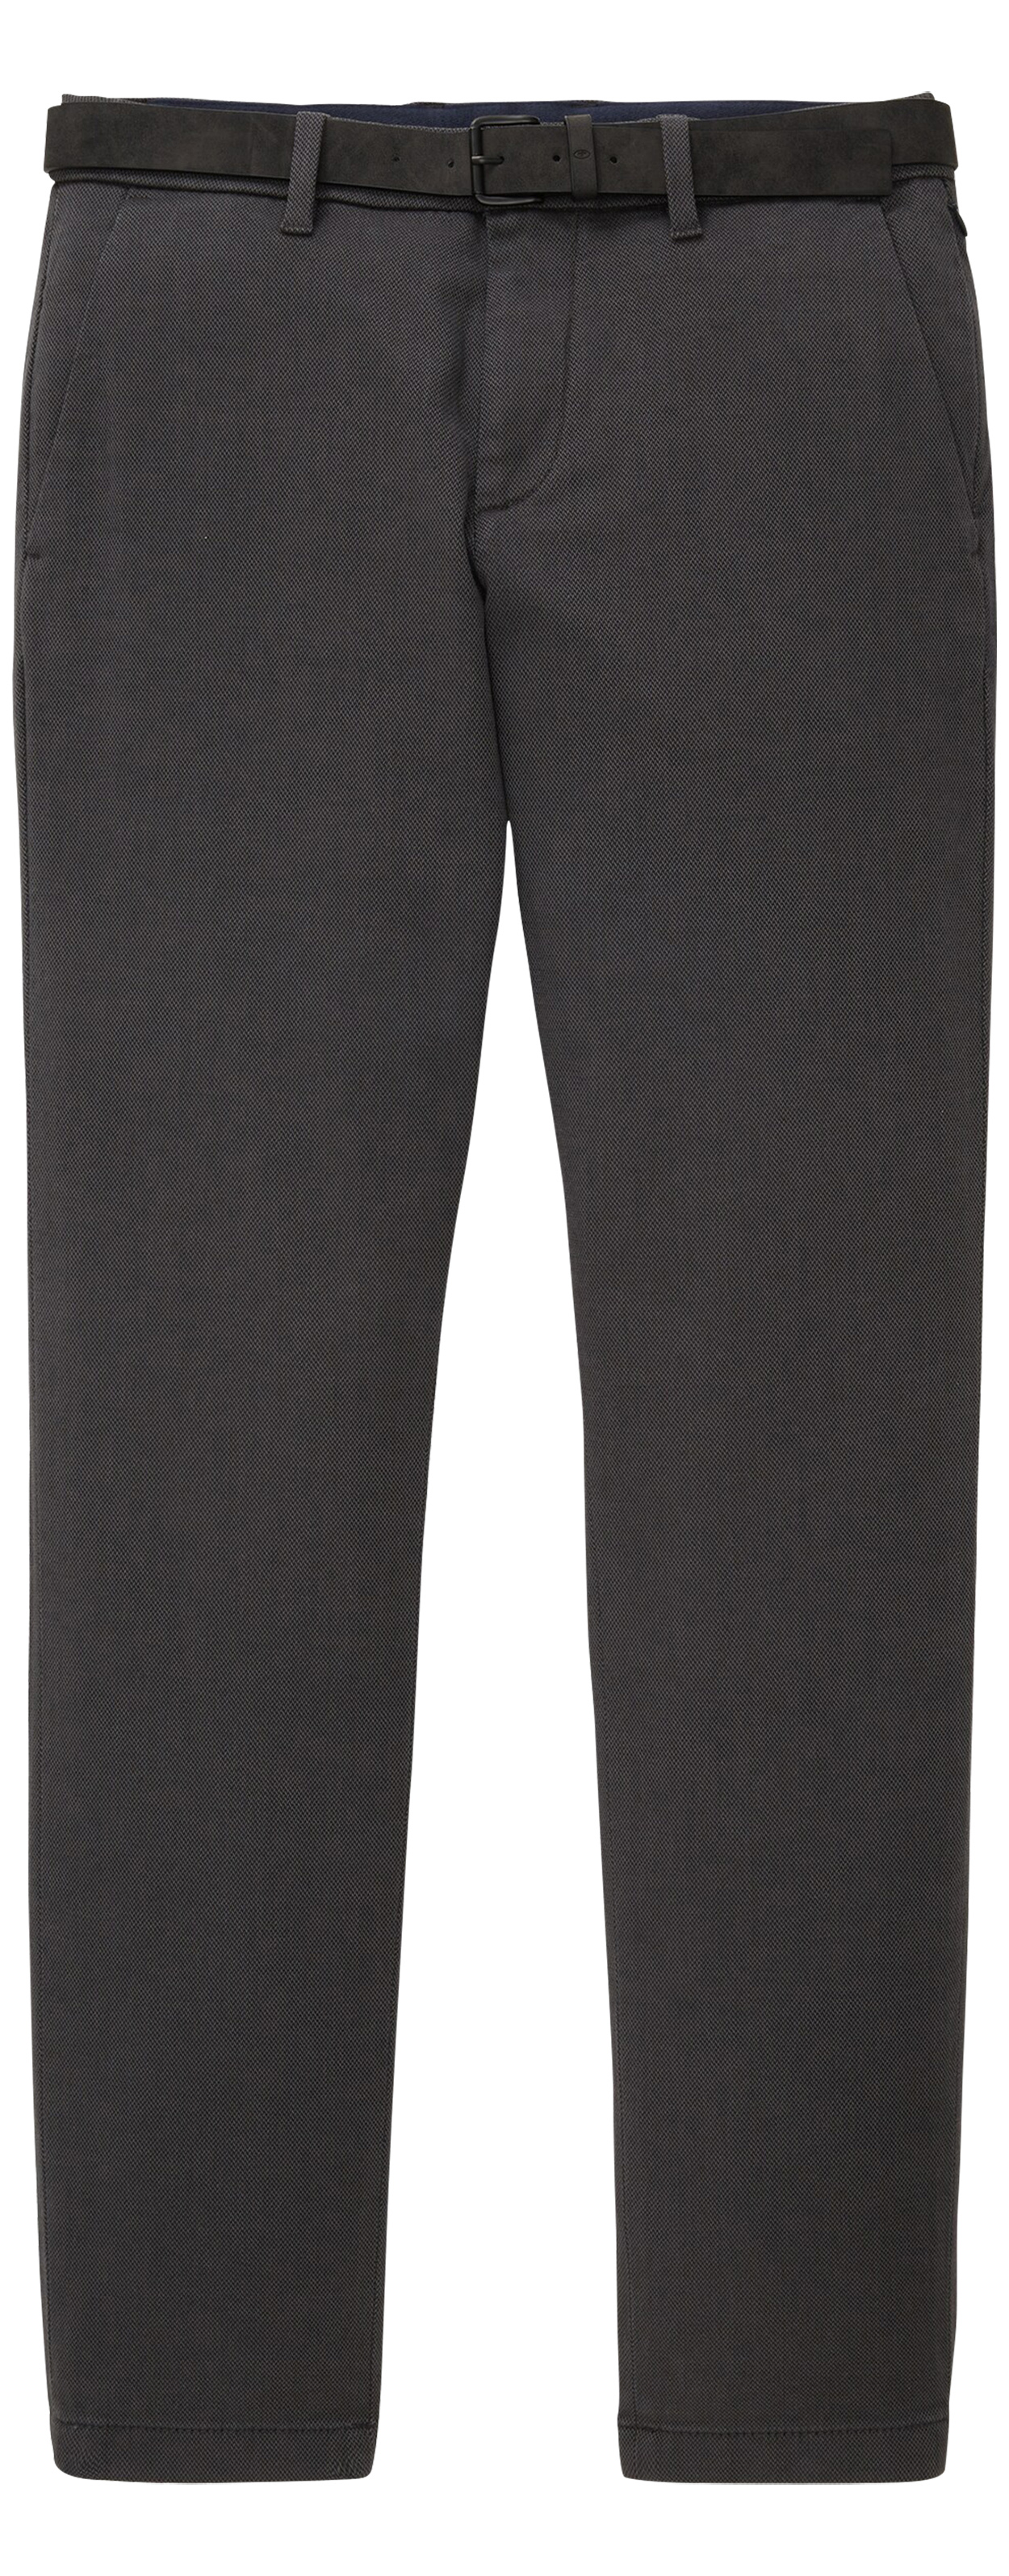 pantalon chino avec une coupe slim fit tom tailor en coton anthracite